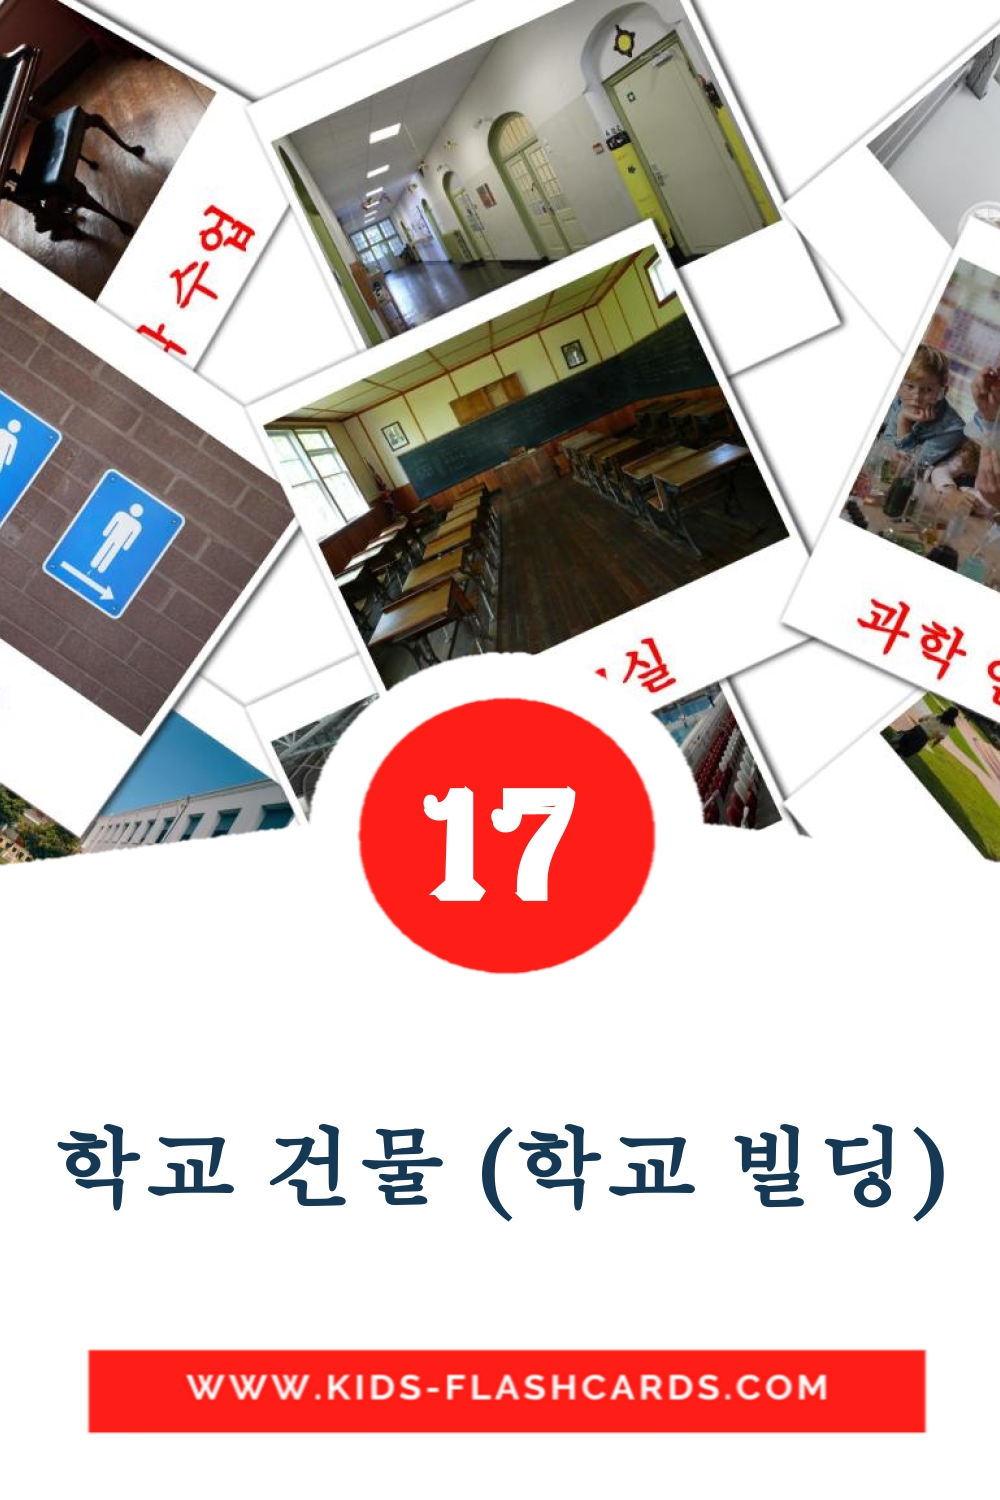 17 학교 건물 (학교 빌딩) Bildkarten für den Kindergarten auf Koreanisch